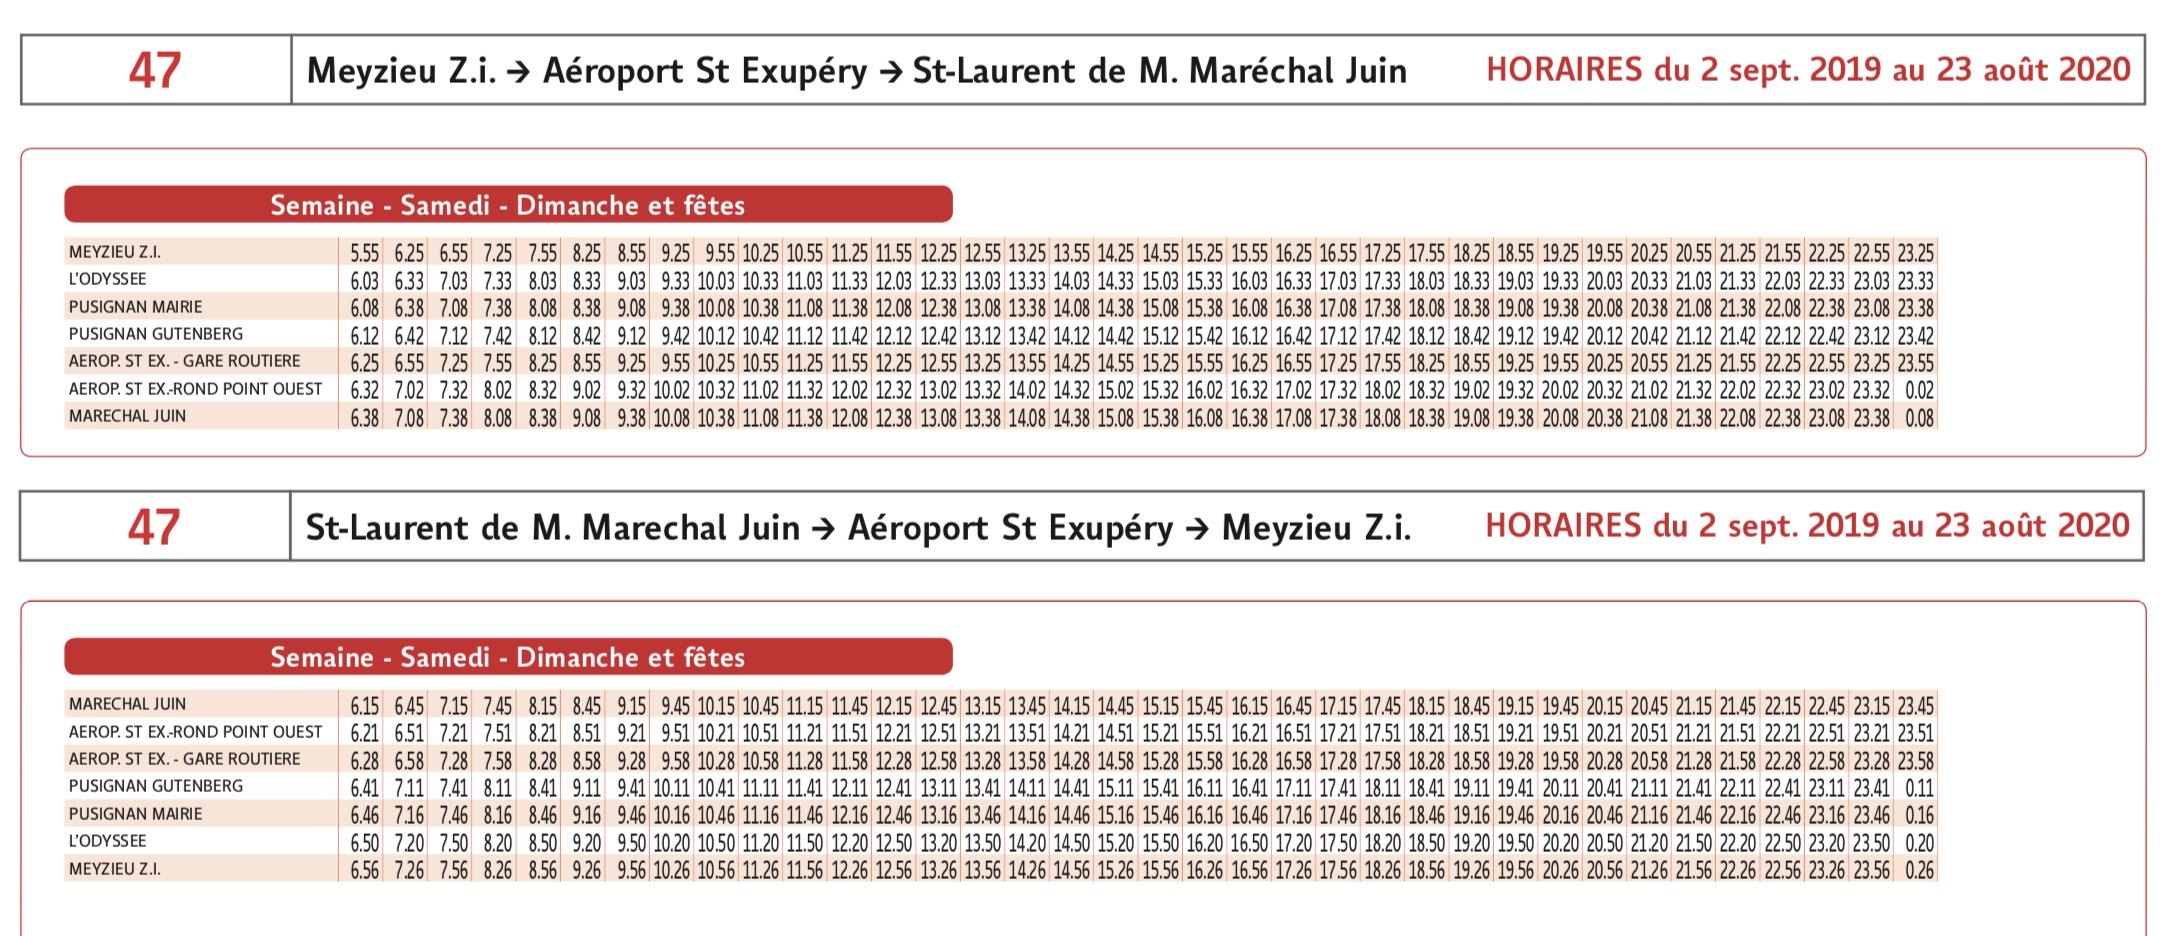 Horaires TCL ligne 47 de Meyzieu terminus T3 à aéroport Lyon Saint-Exupéry et retour